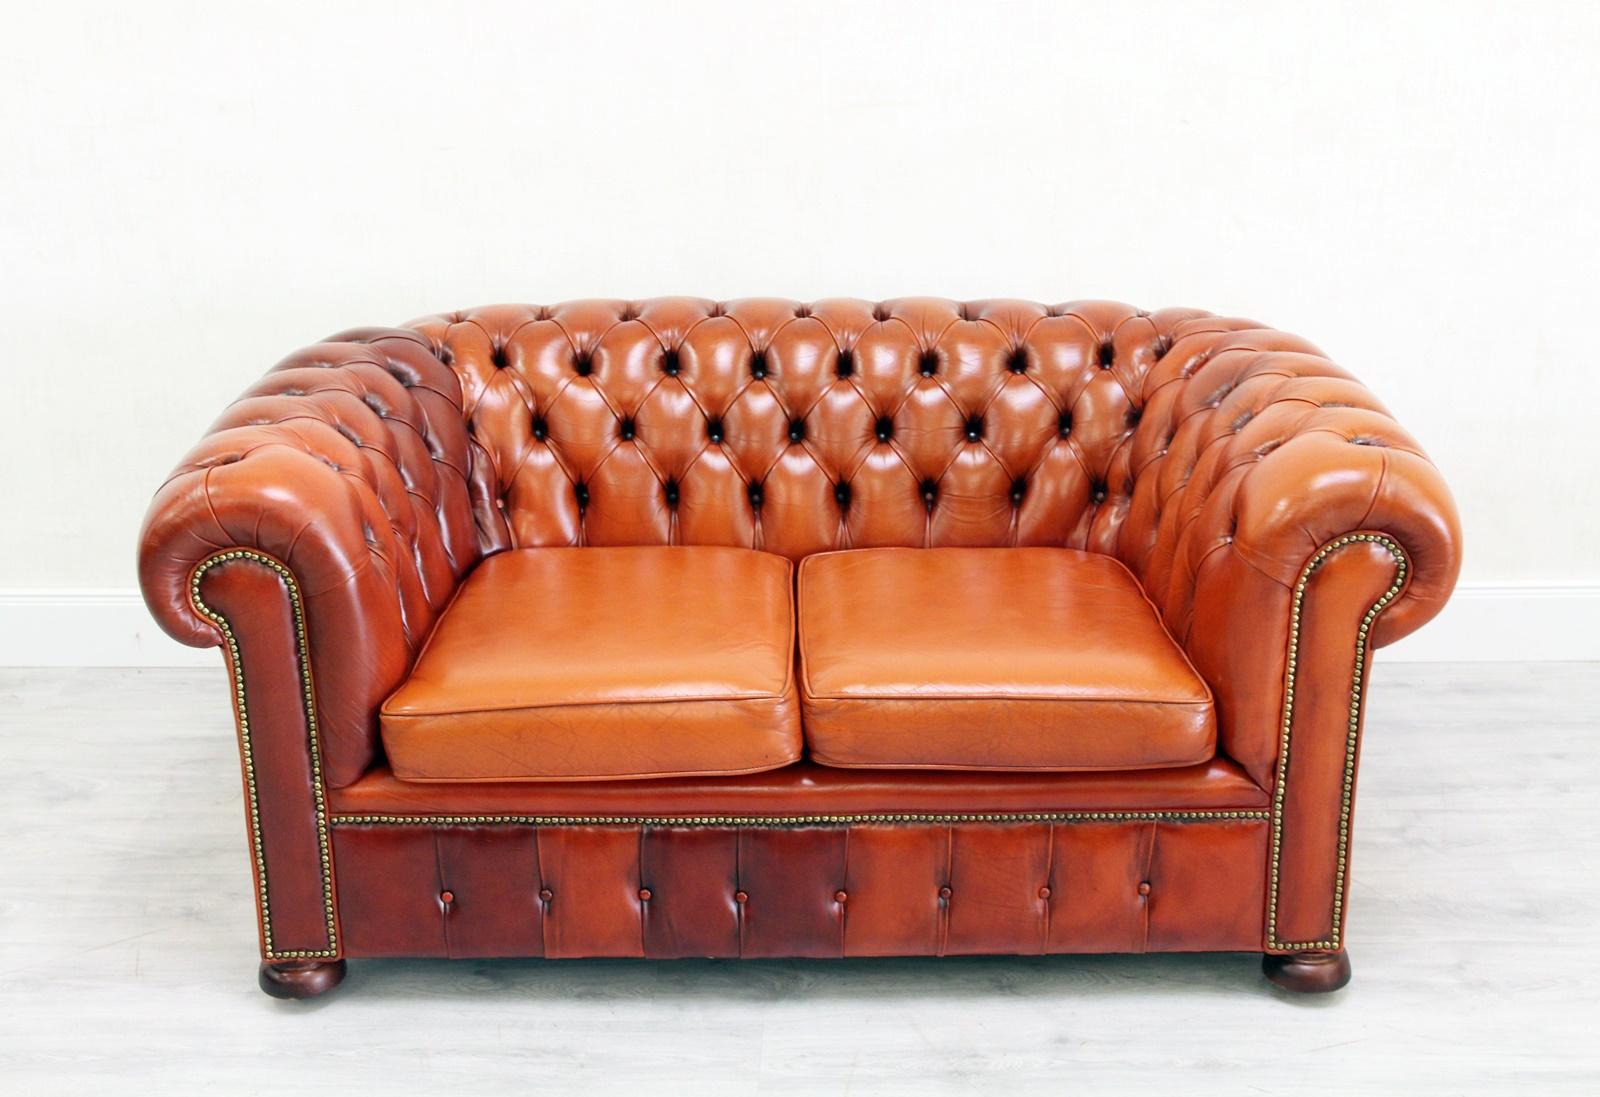 Chesterfield echt Leder Zweier Sofa
in originellem Design

Zustand: Das Sofa ist in einem SEHR gutem Zustand
Sofa
Hx76cm Lx160cm Tx90cm
Polster ist in einem gutem zustand mit Patina(siehe Fotos).
Farbe:Orange
Kissen:Schaumstoff

hochwertige